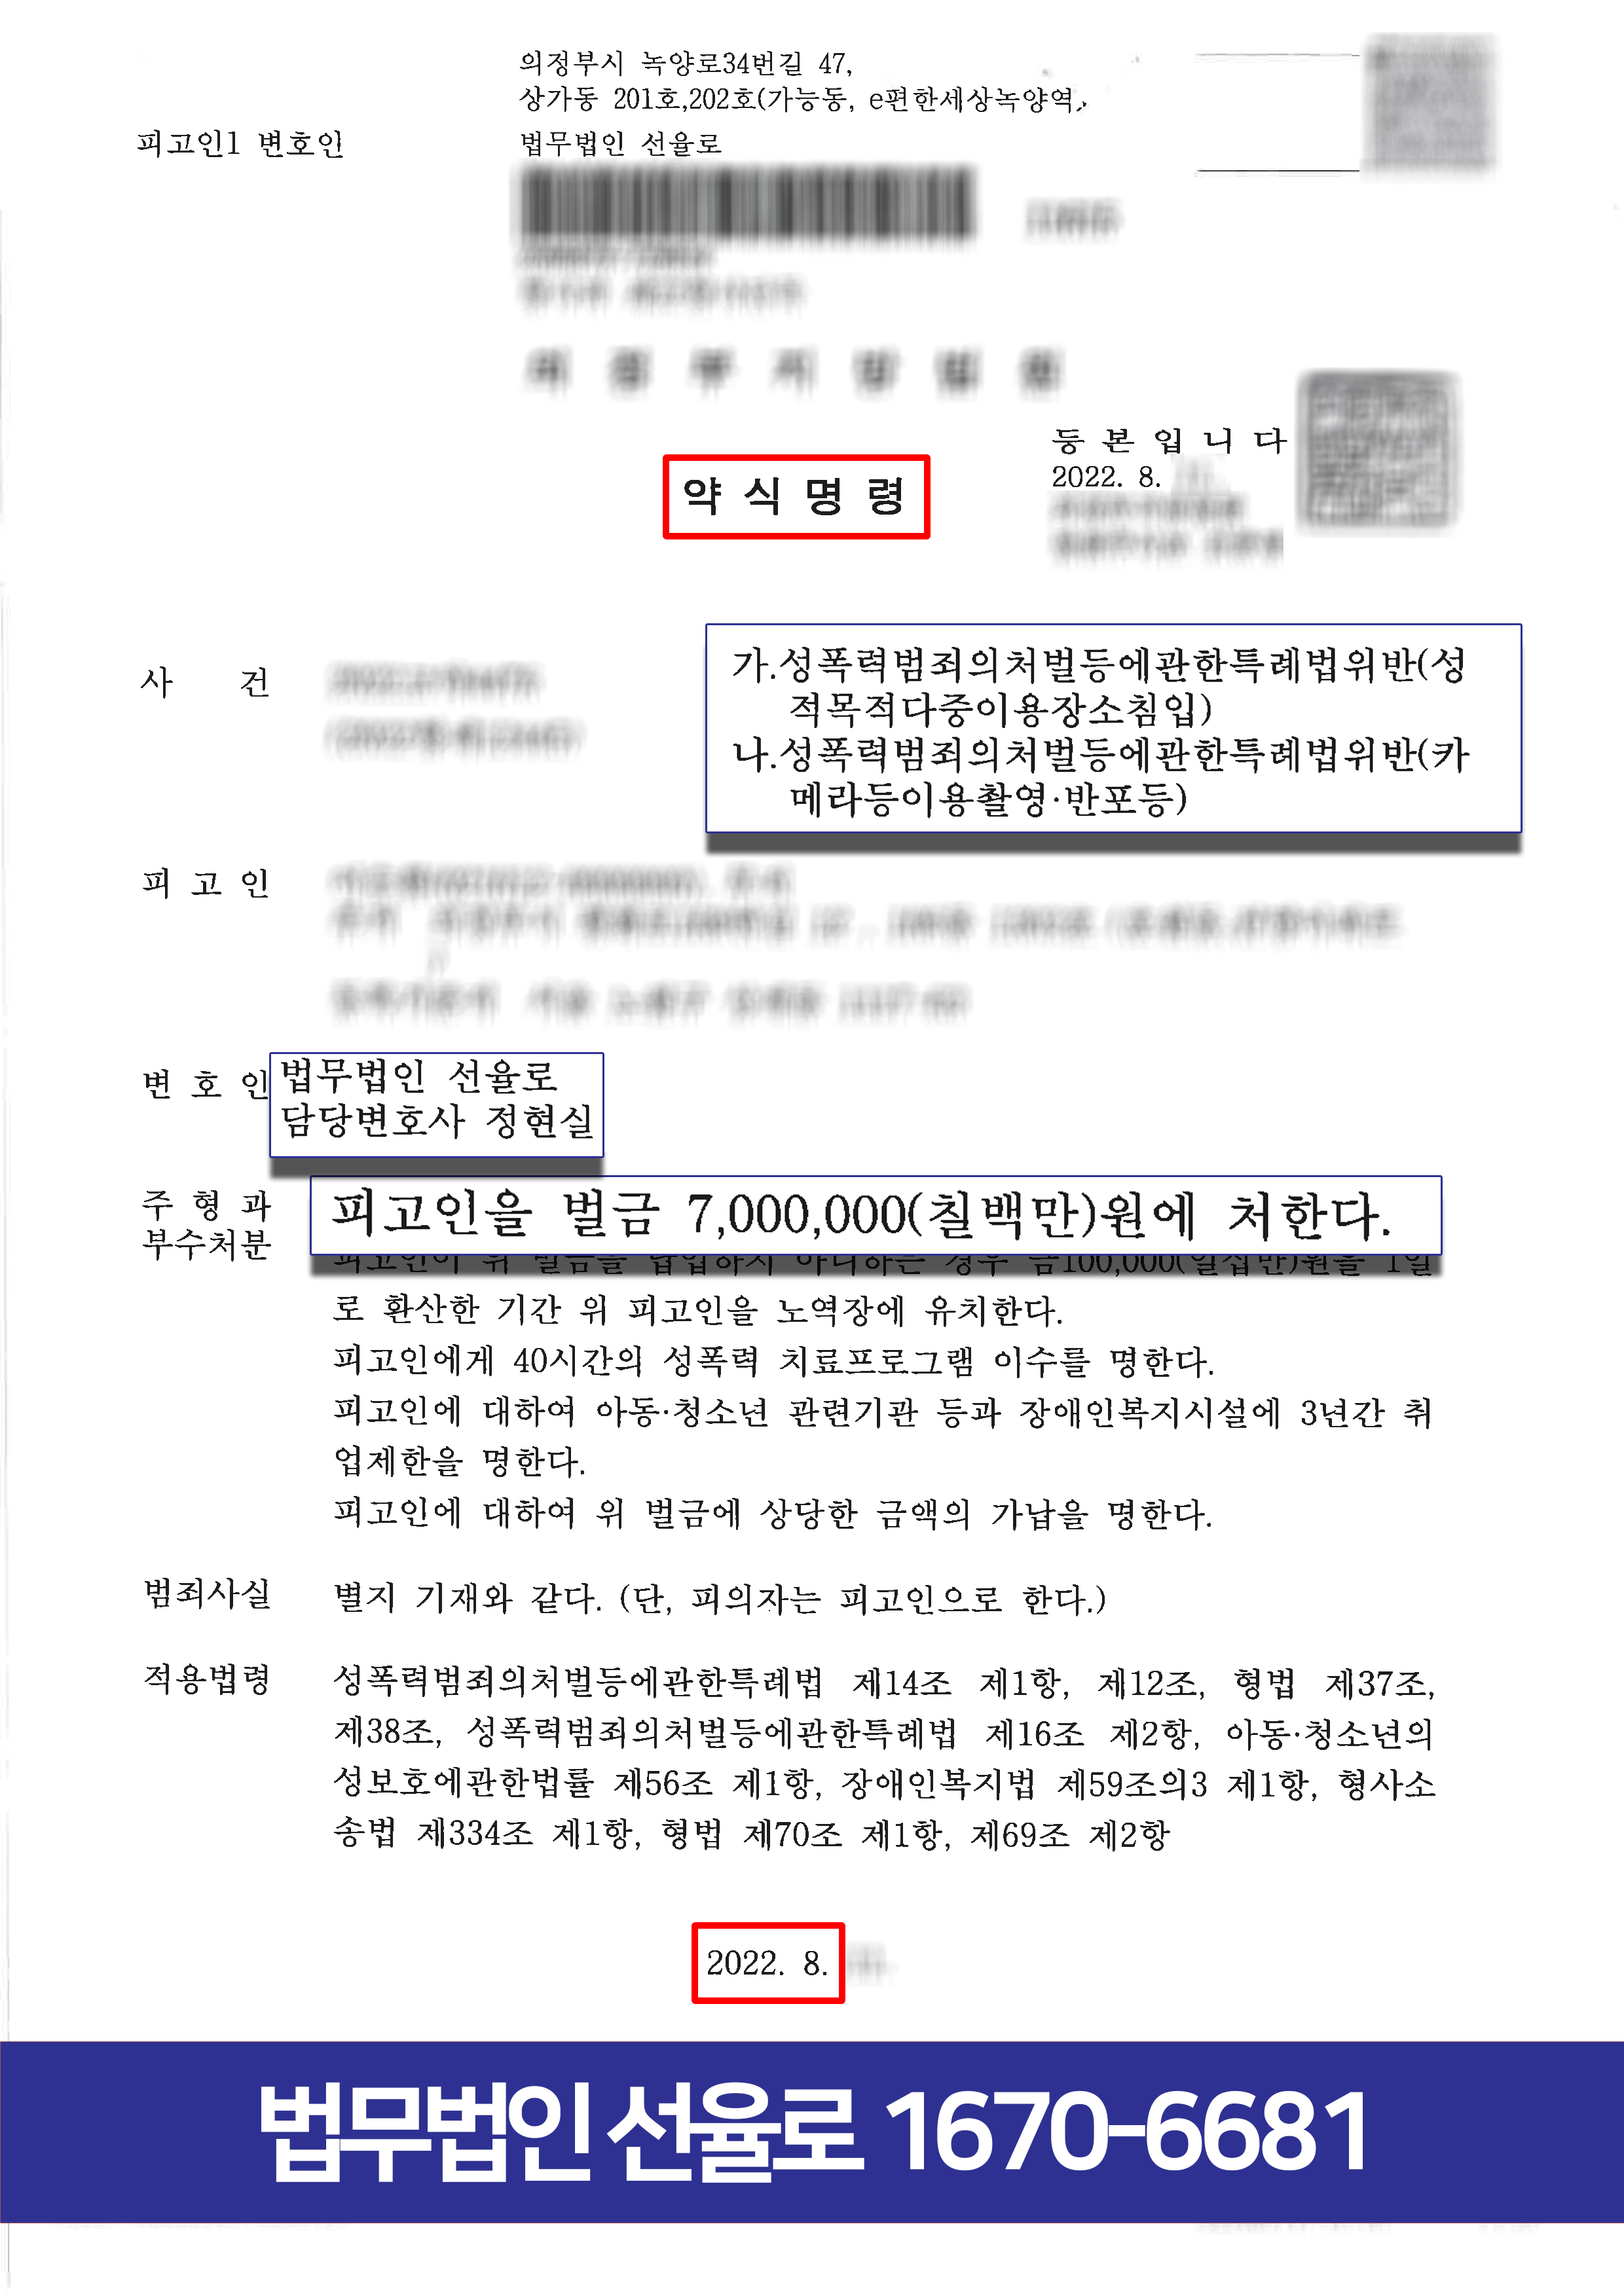 불법촬영 카촬죄 수원 의정부 변호사판결문 복사-010.png